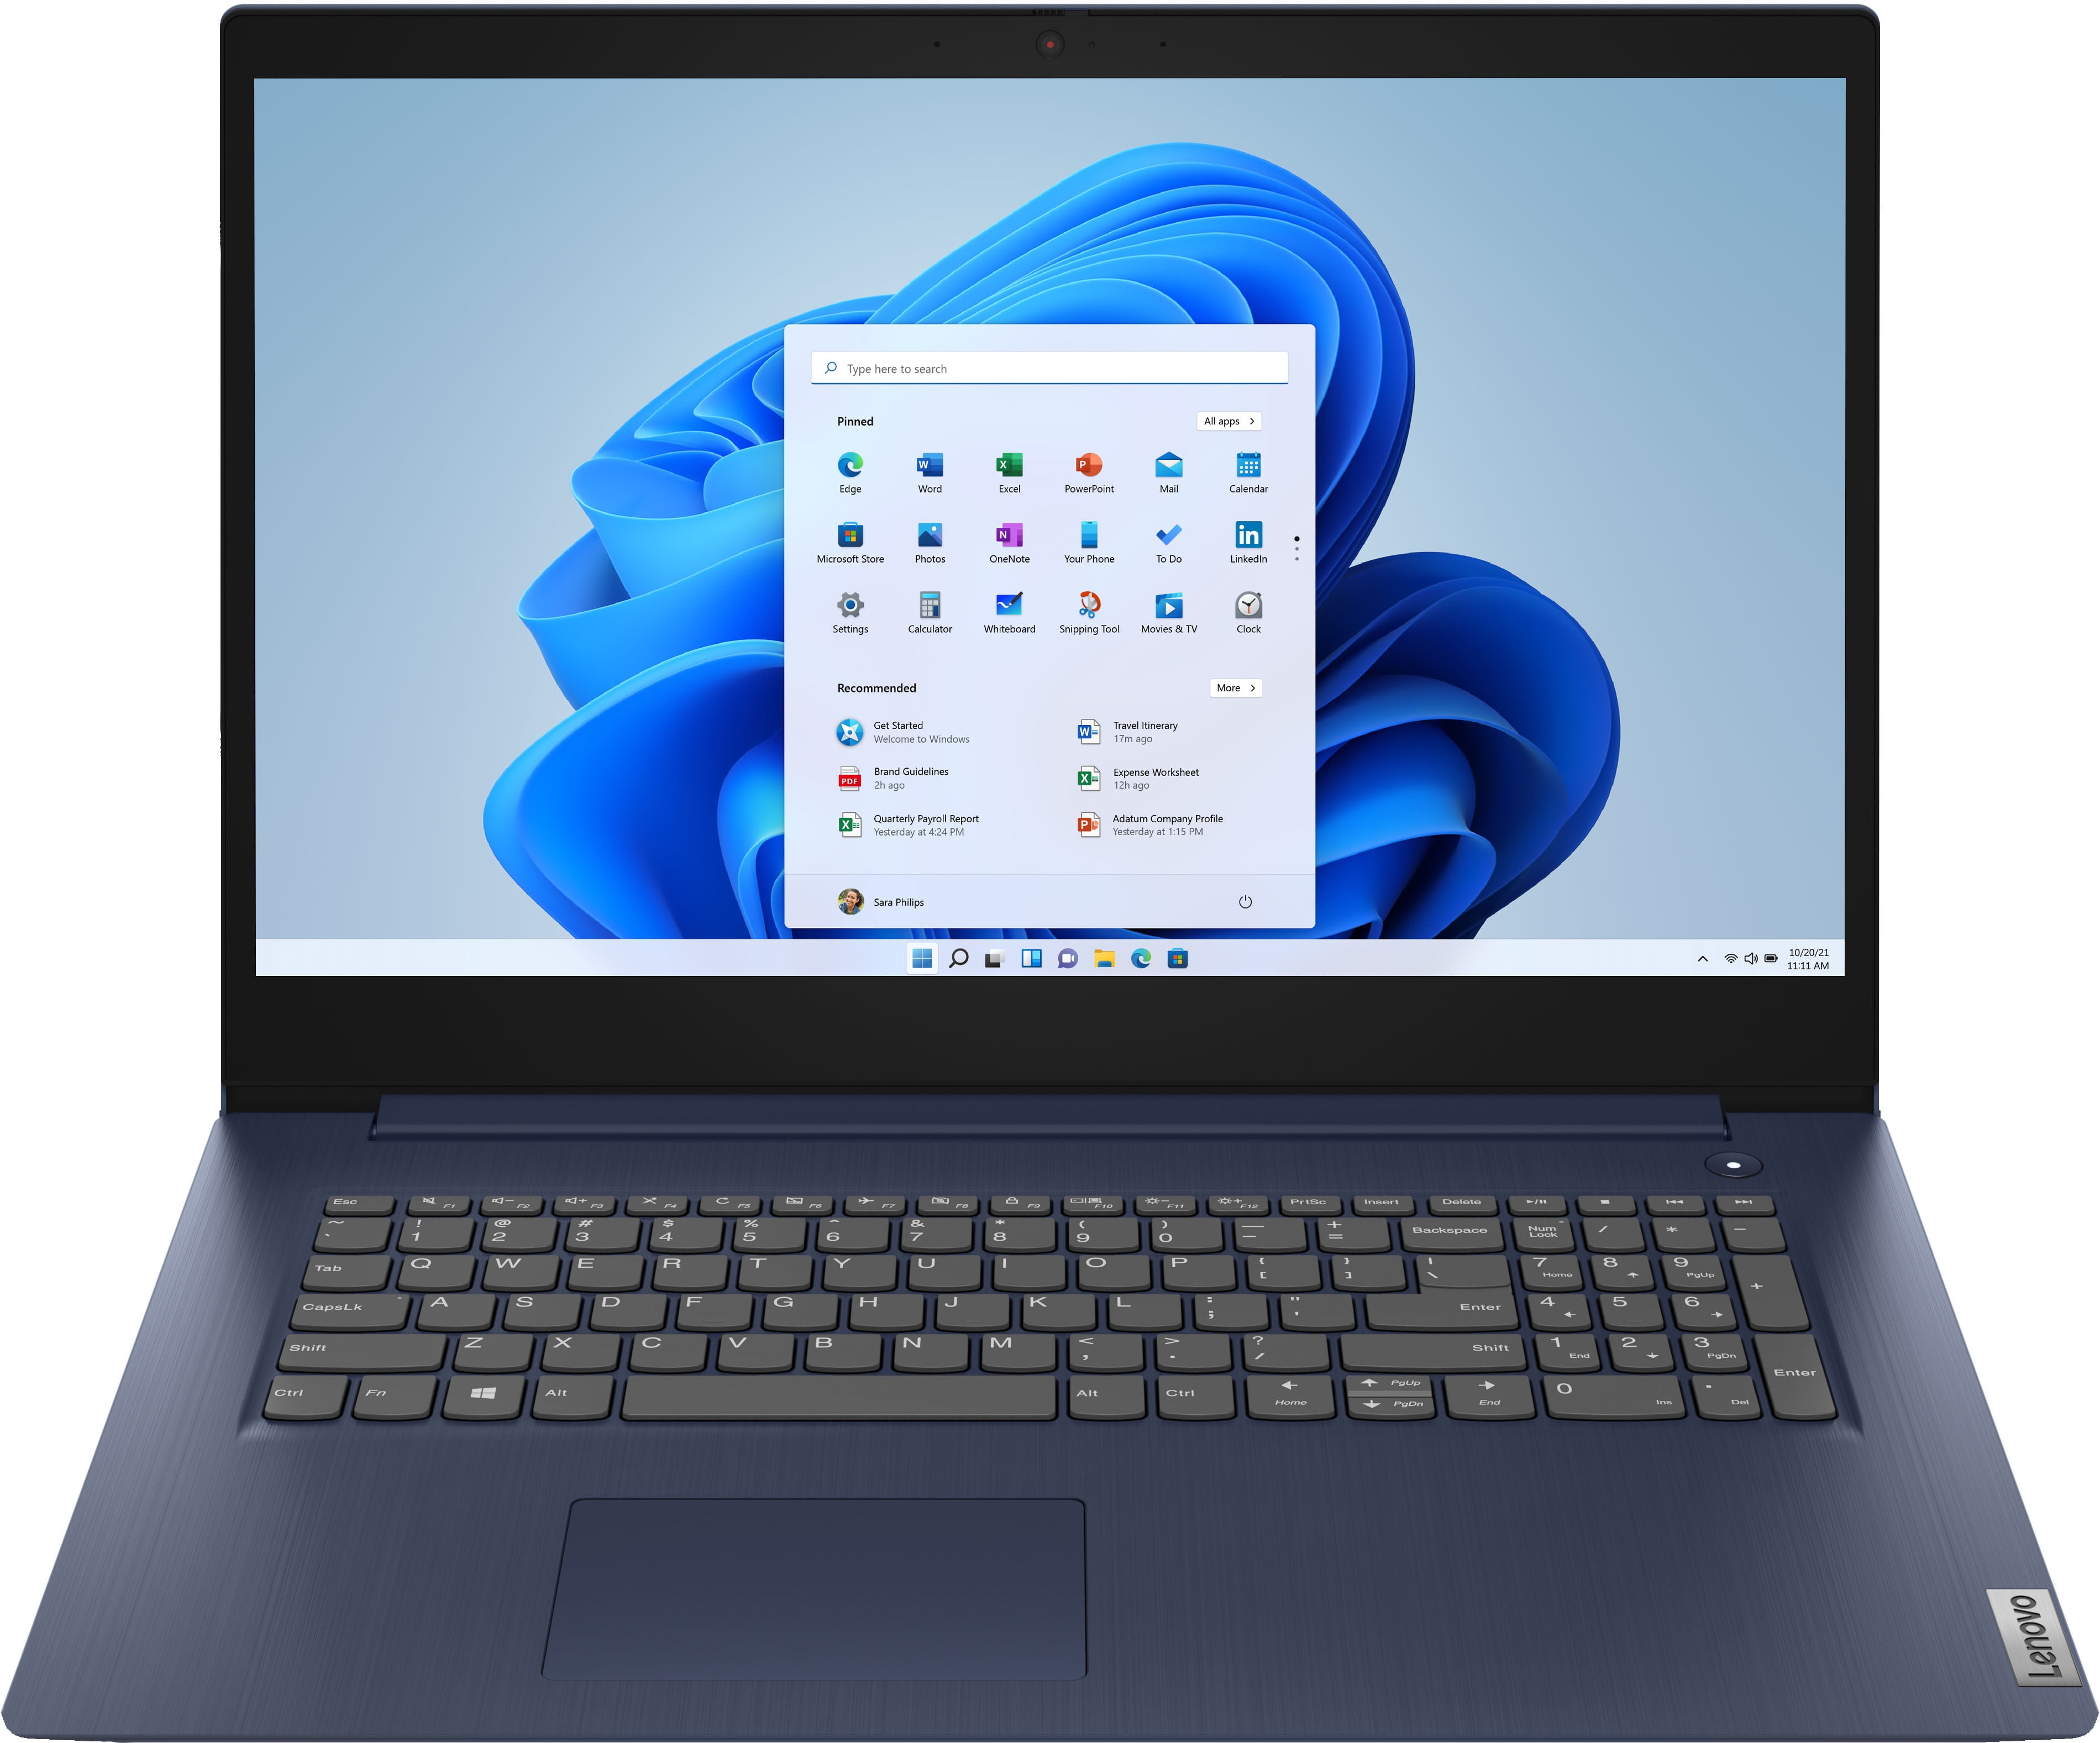 IdeaPad 3 17" laptop, Intel Core i5-1035G1 12GB RAM 256GB SSD, Wi-Fi with Bluetooth 5,Abyss Blue, Windows 10 - Walmart.com